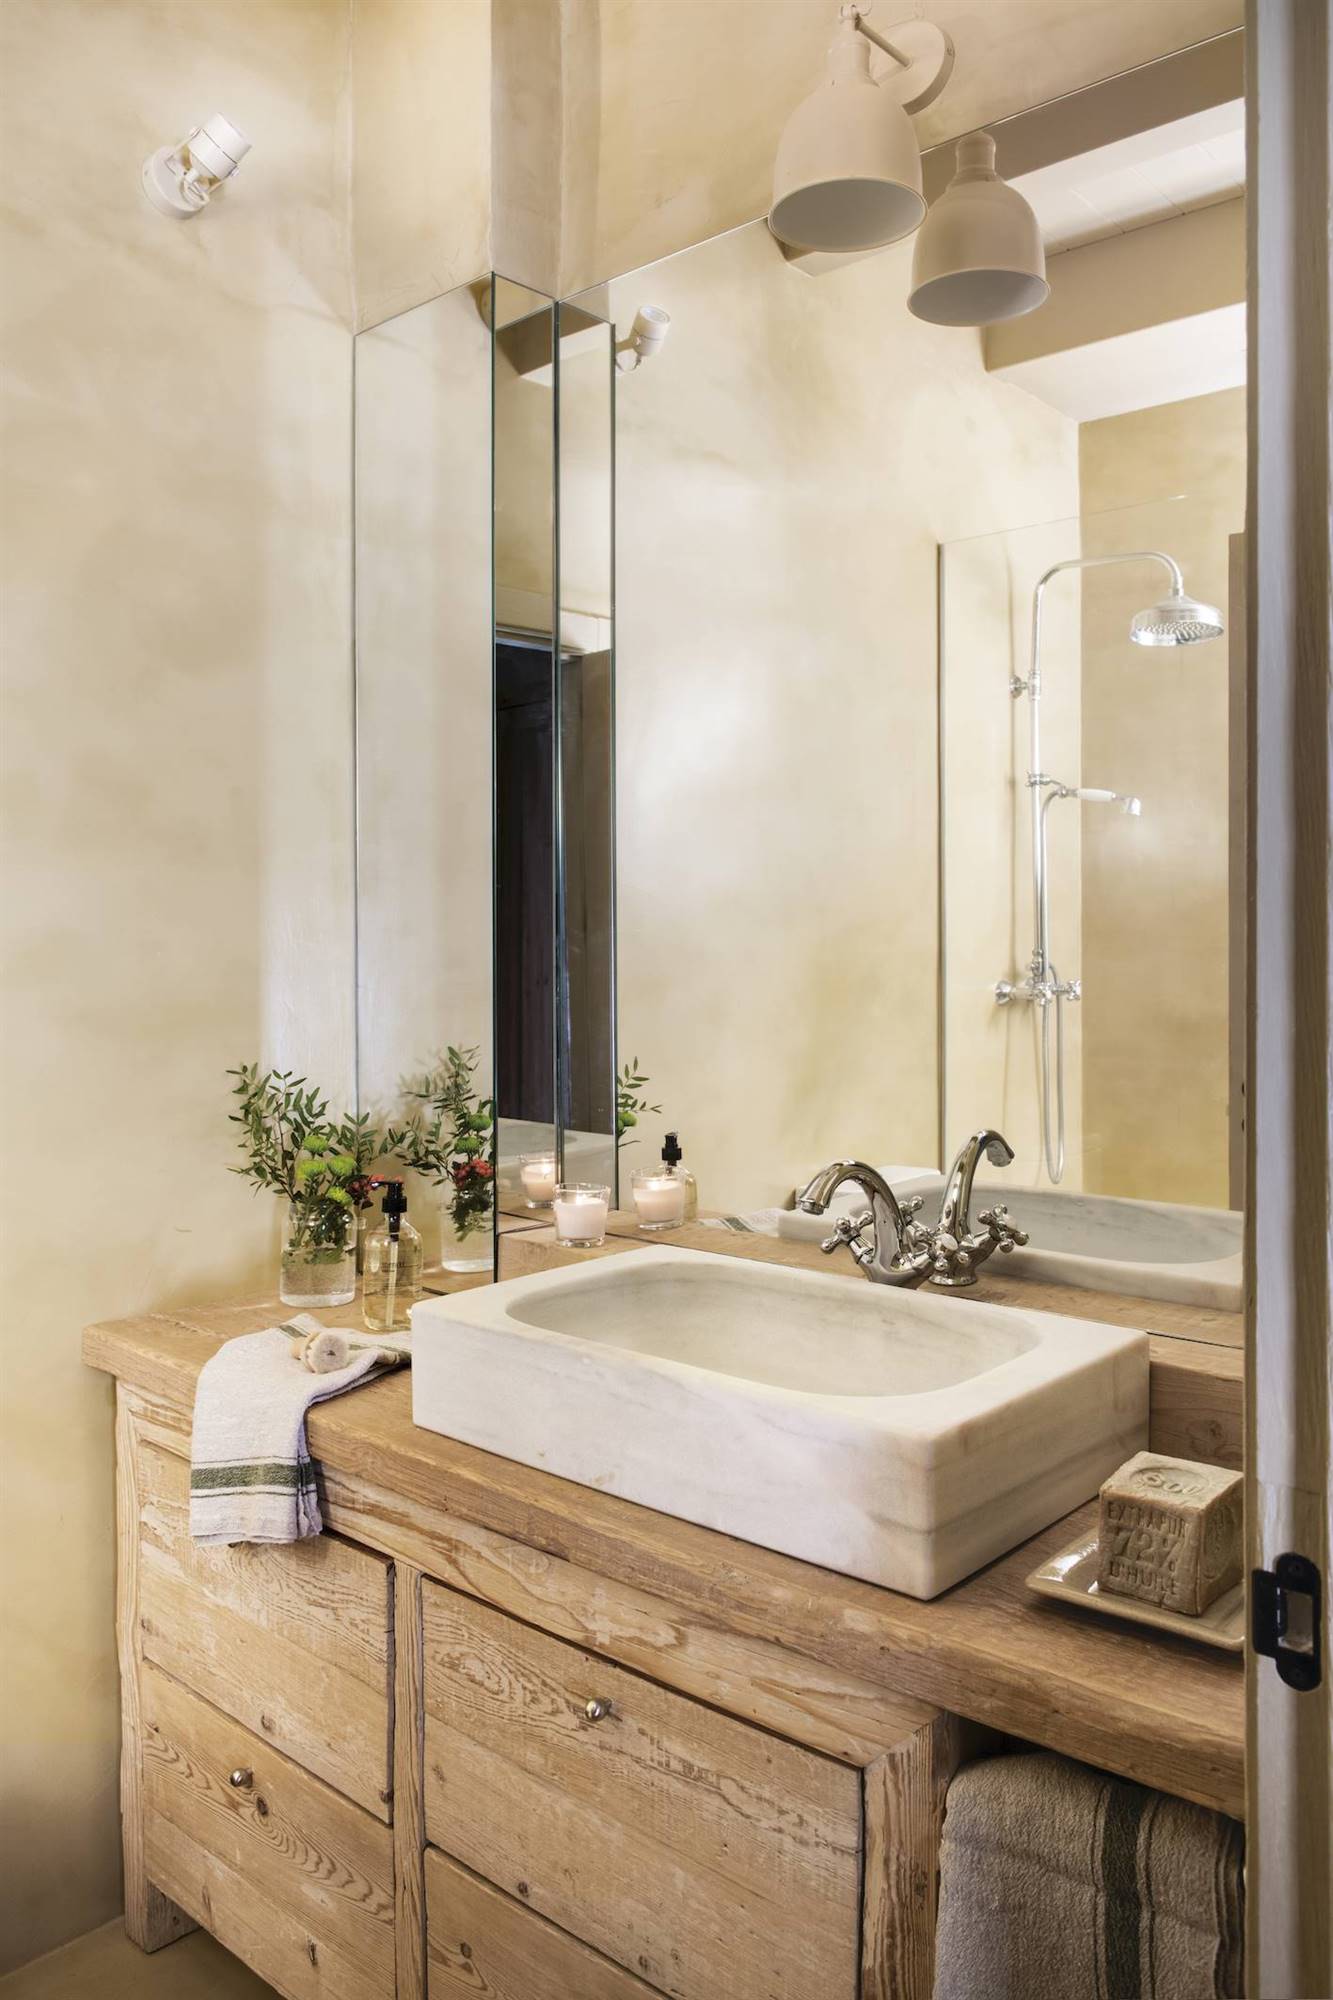 Baño con espejo de lado a lado y mueble para el lavamanos de madera.